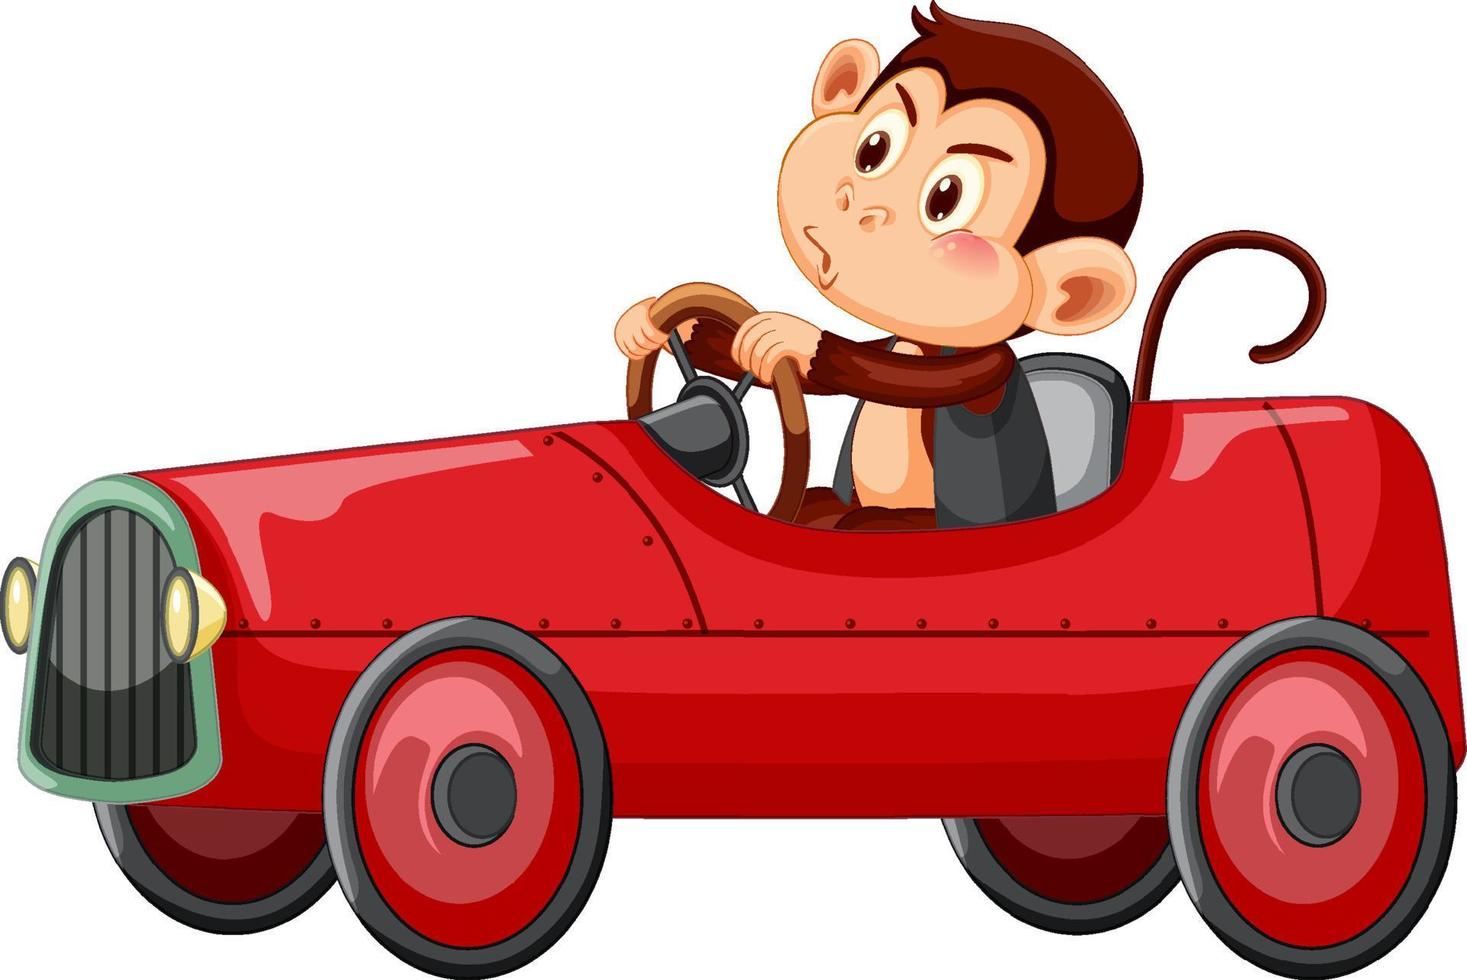 kleine aap rode raceauto rijden op witte achtergrond vector